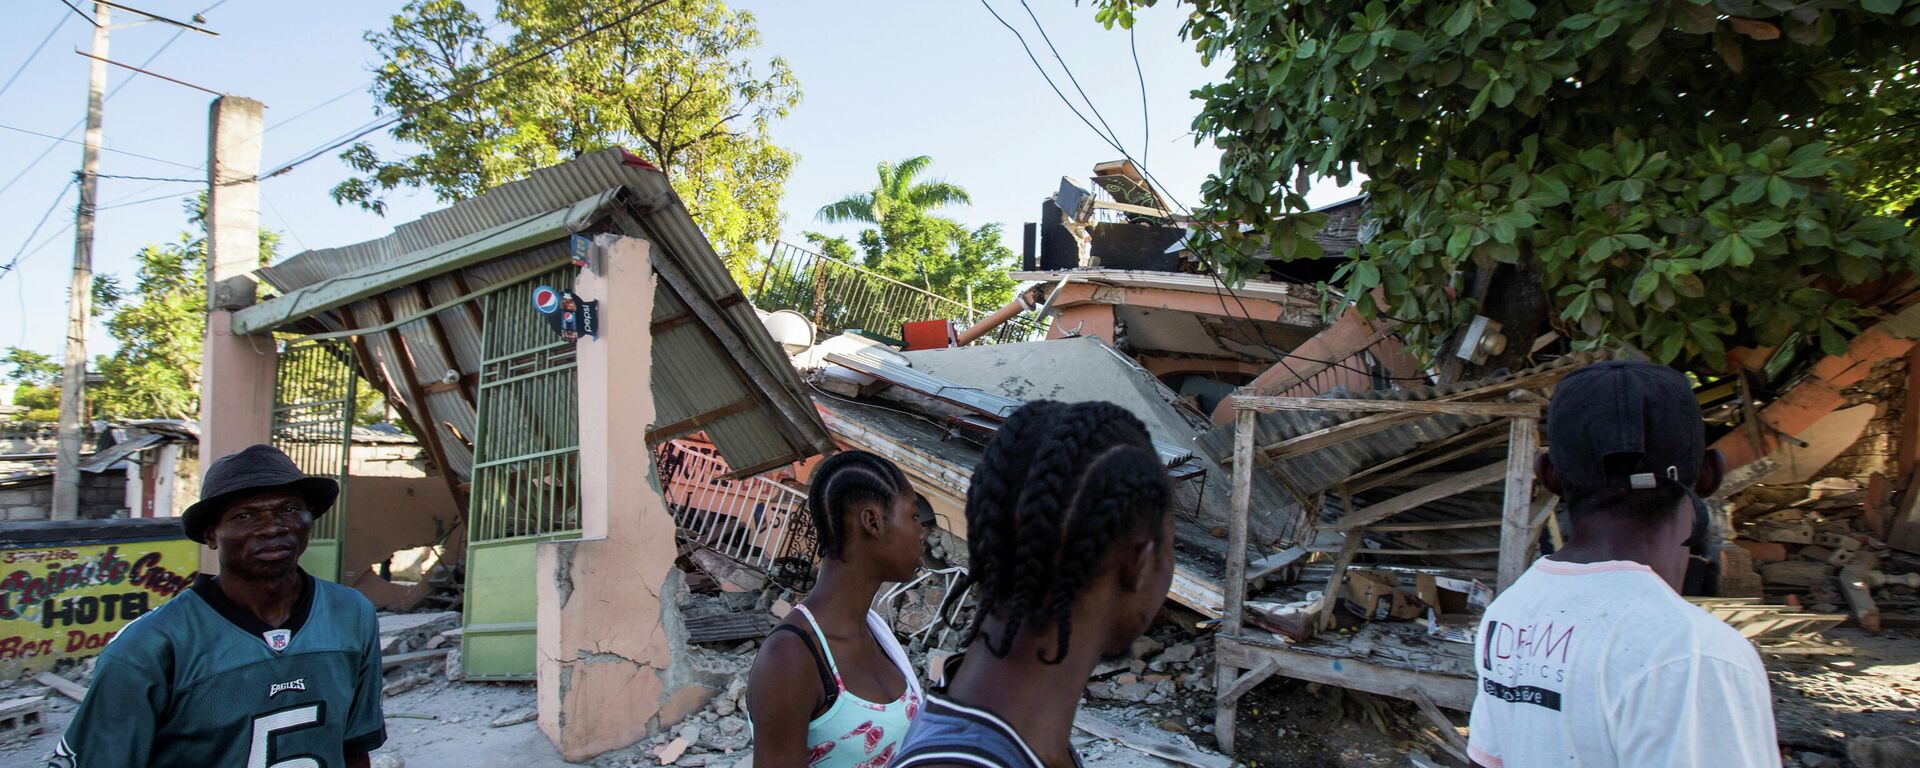 Consecuencias del terremoto en Haití - Sputnik Mundo, 1920, 15.08.2021